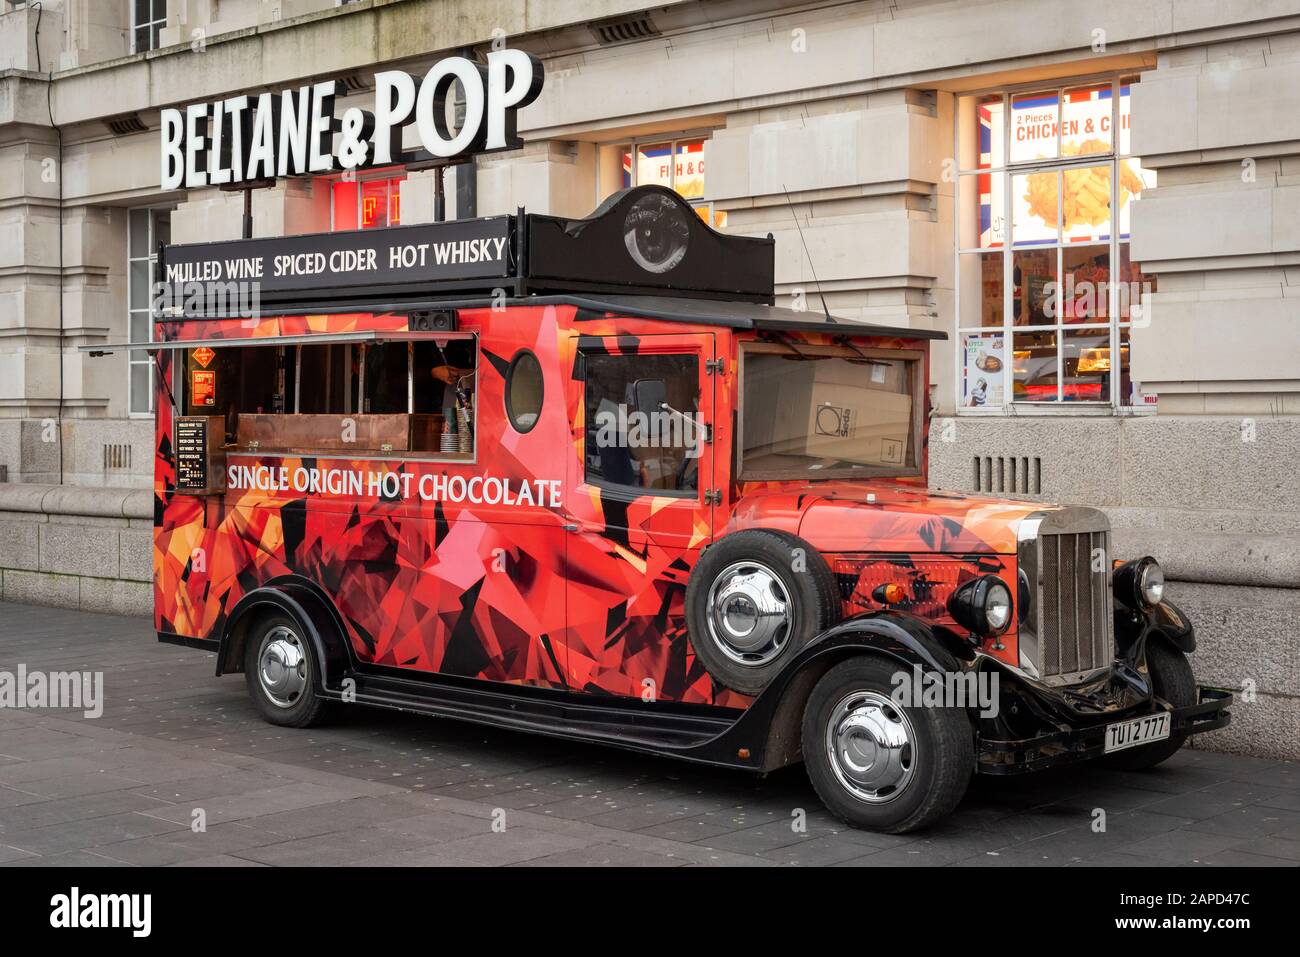 Personne au Beltane & Pop n'a converti le camion rouge d'époque comme une cabine mobile de boissons chaudes au Sea Life Centre London Aquarium à Londres, au Royaume-Uni Banque D'Images